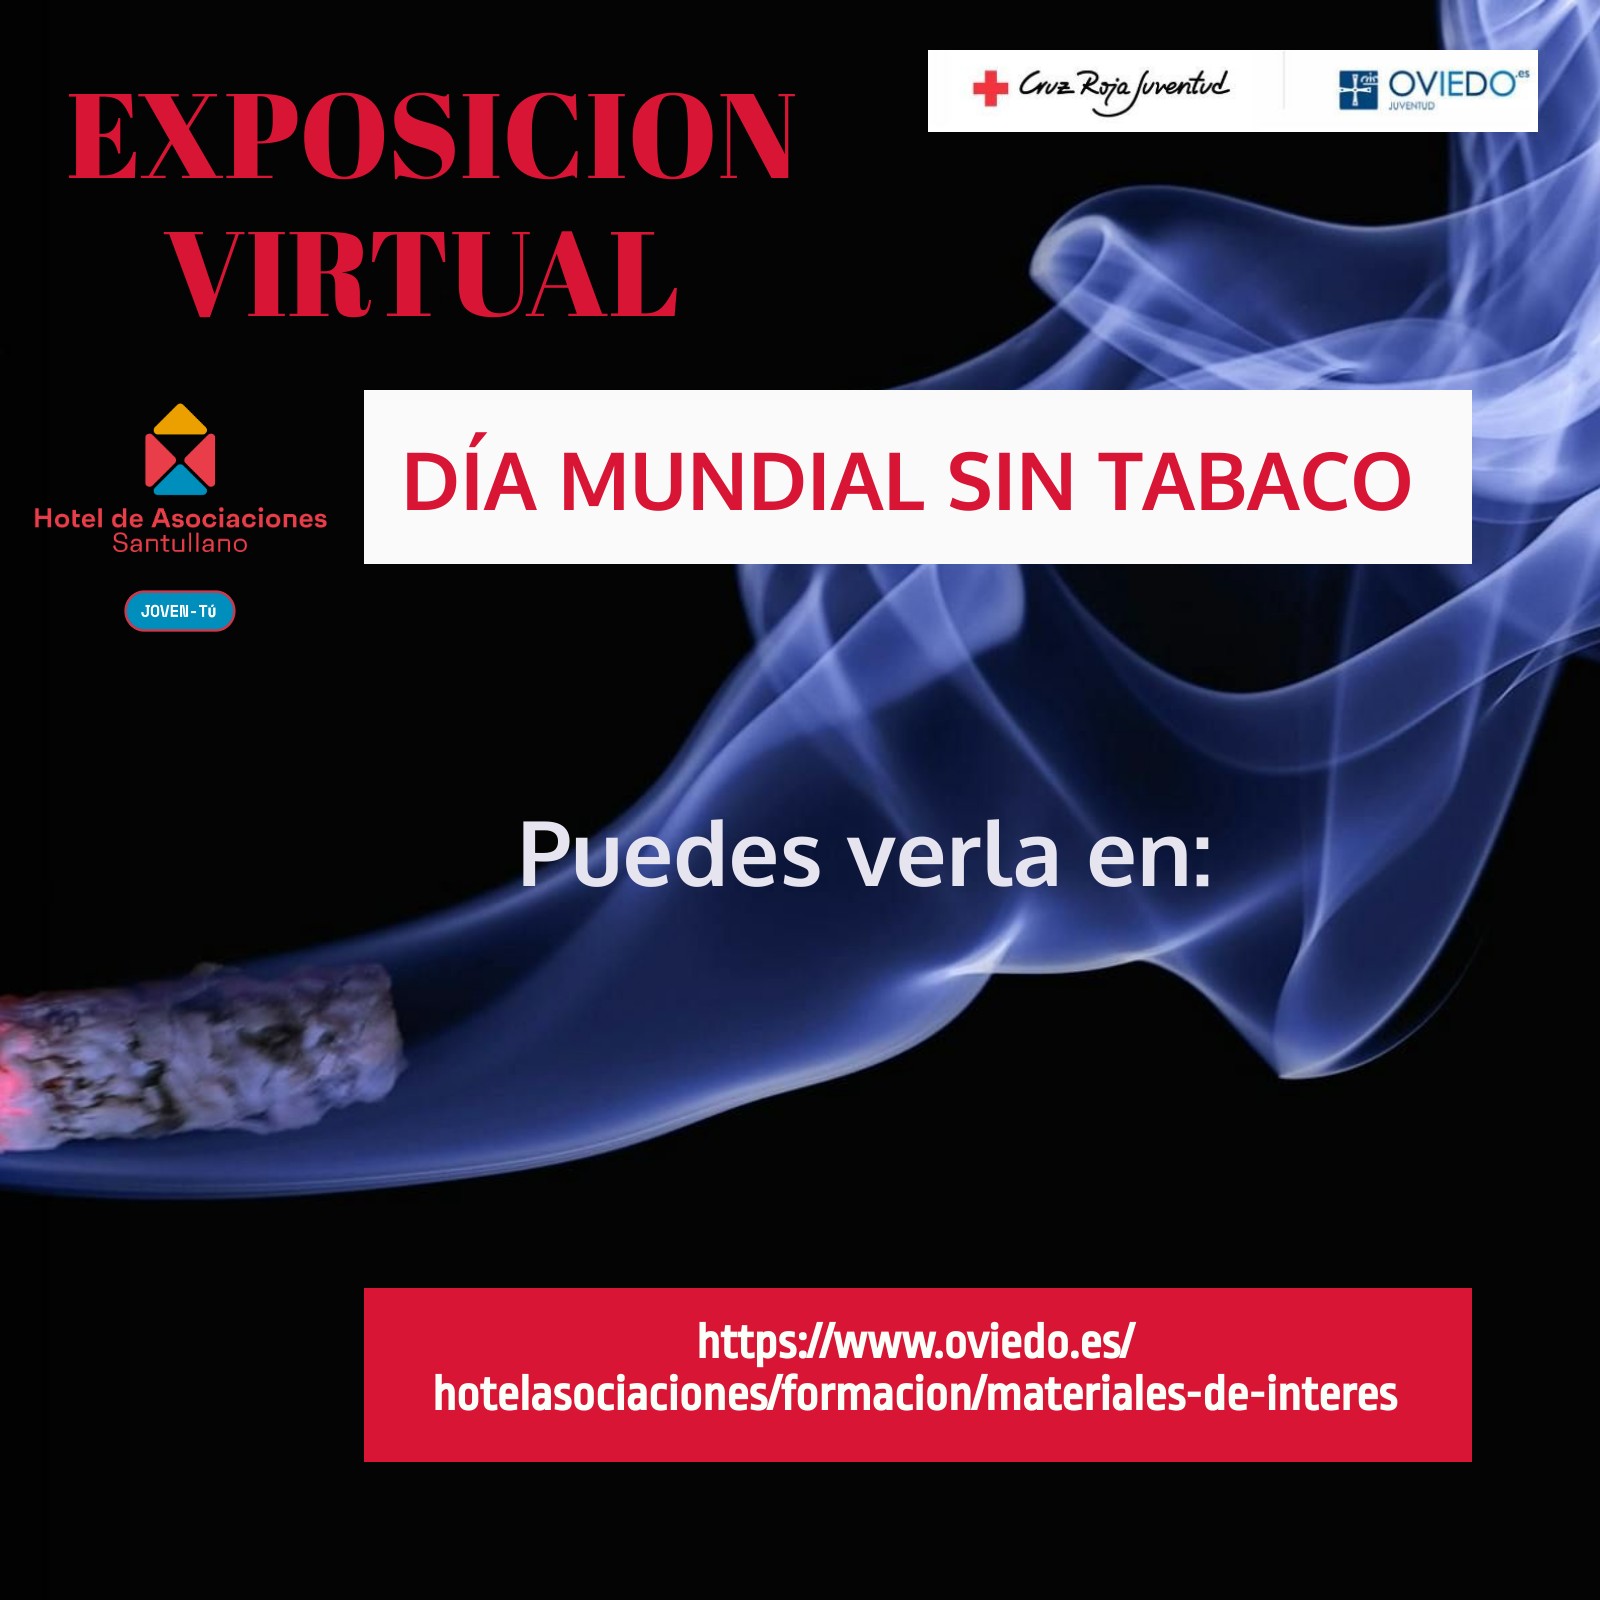 Exposicion virtual Día mundial sin tabaco